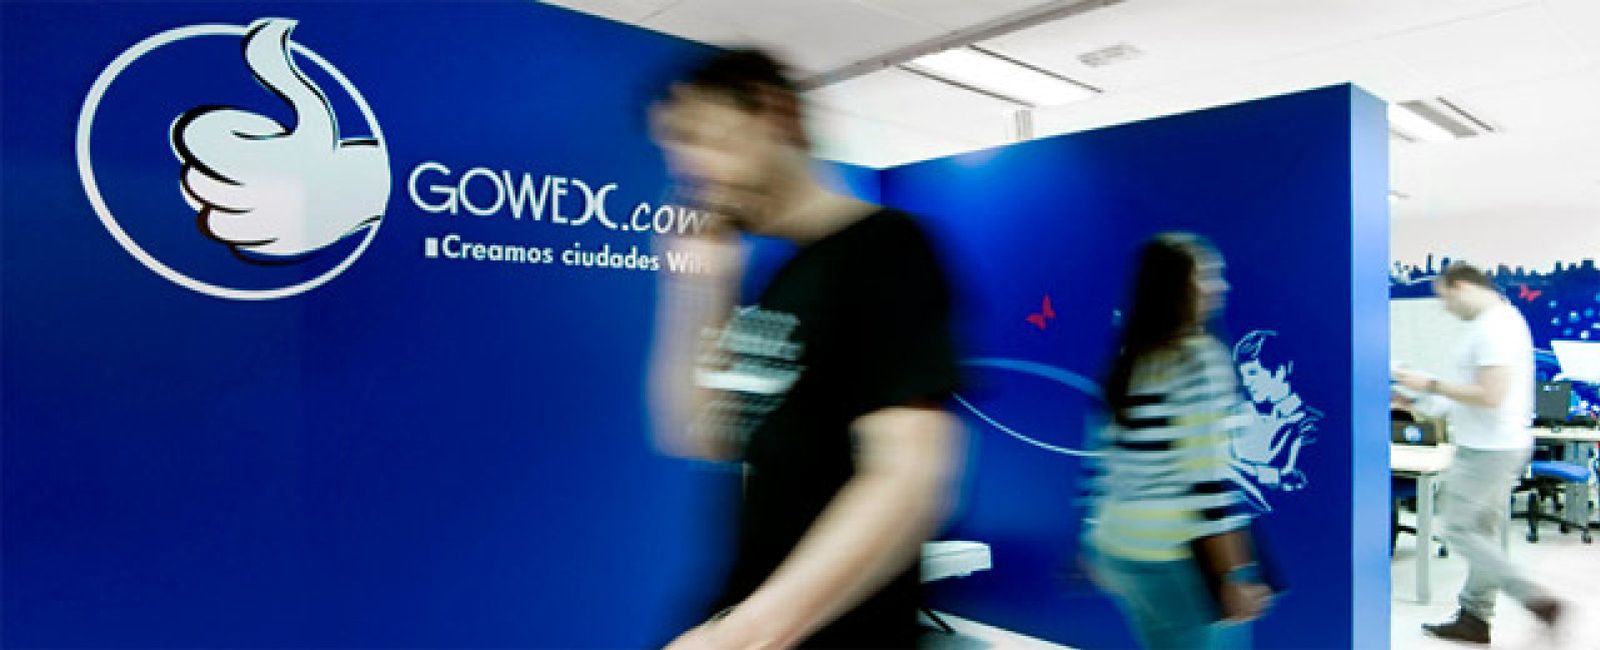 Foto: La española Gowex llevará el wifi gratuito a Estados Unidos